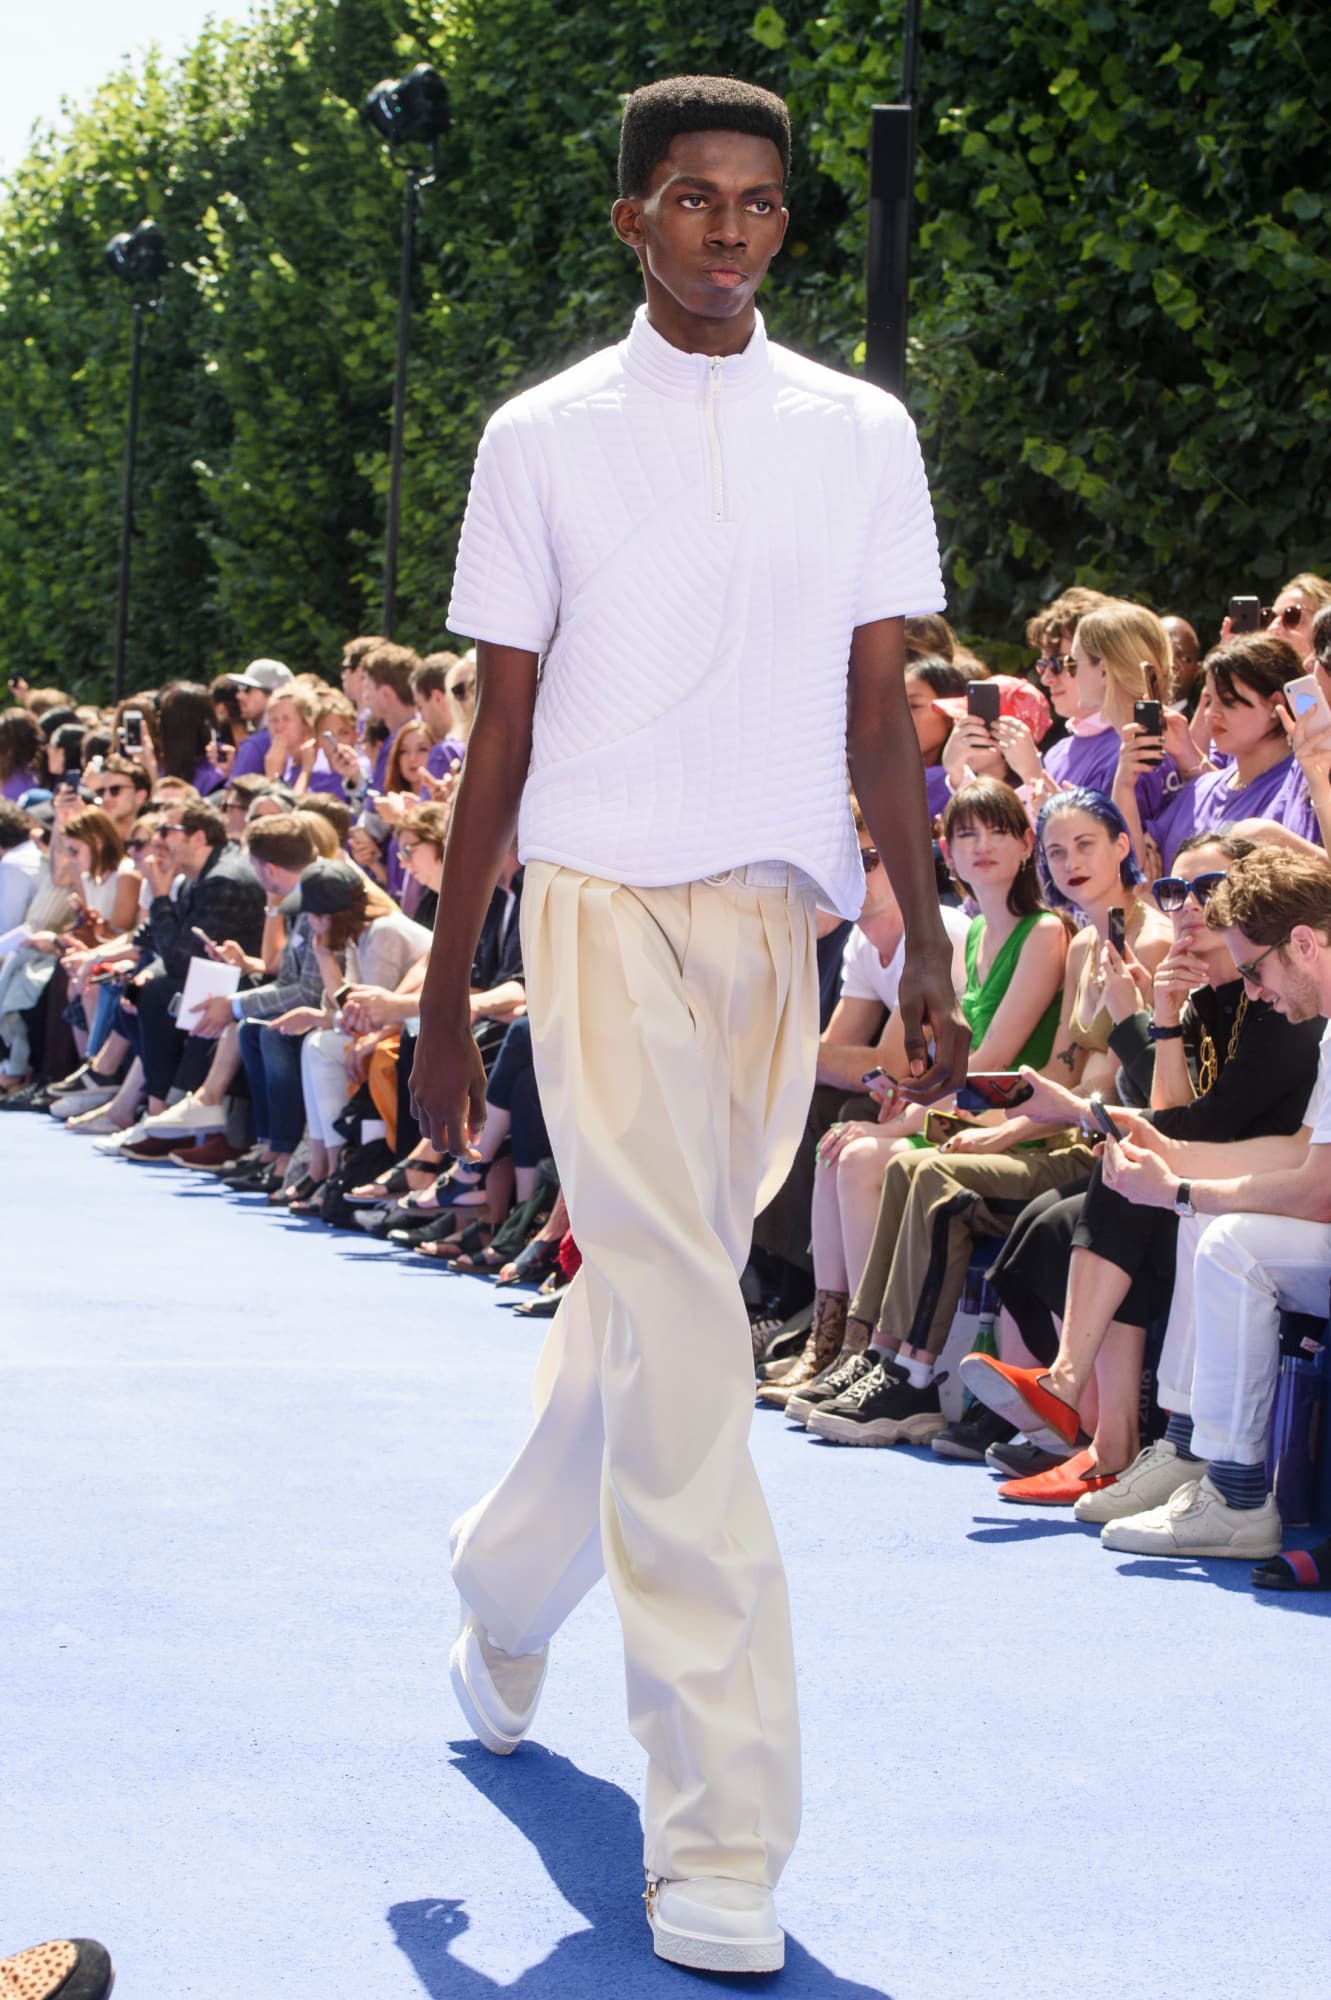 “Virgil Abloh makes debut for Louis Vuitton”